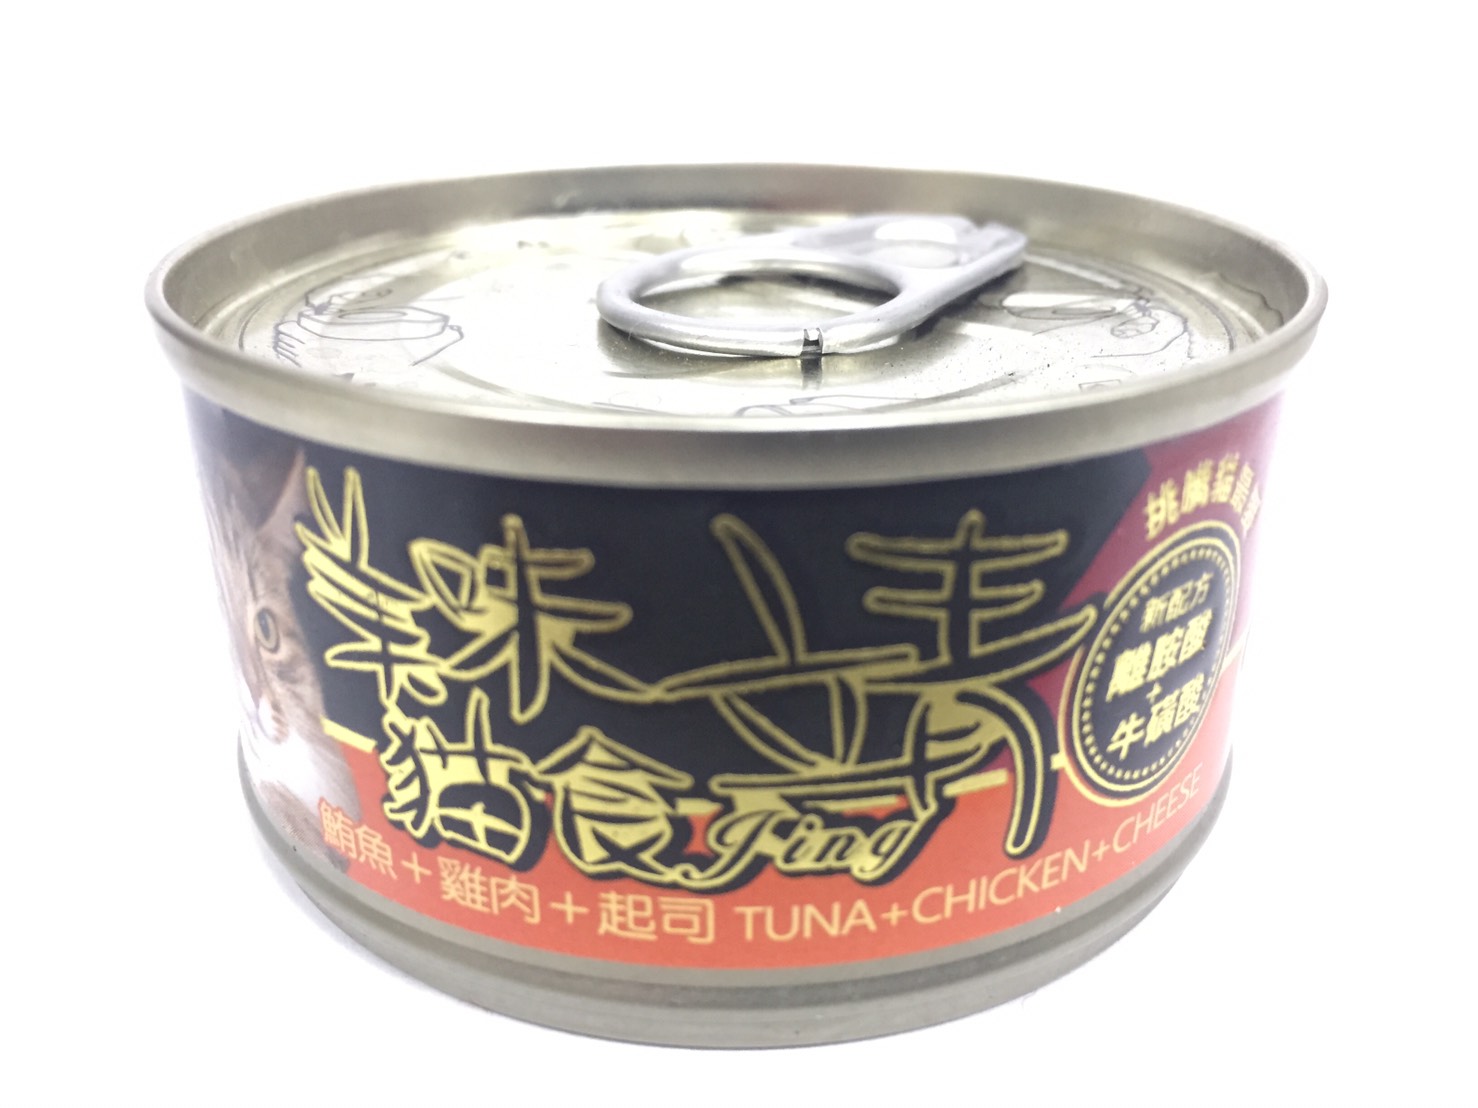 靖特級貓罐-鮪魚+雞肉+起司
Jing cat can-tuna+chicken+cheese